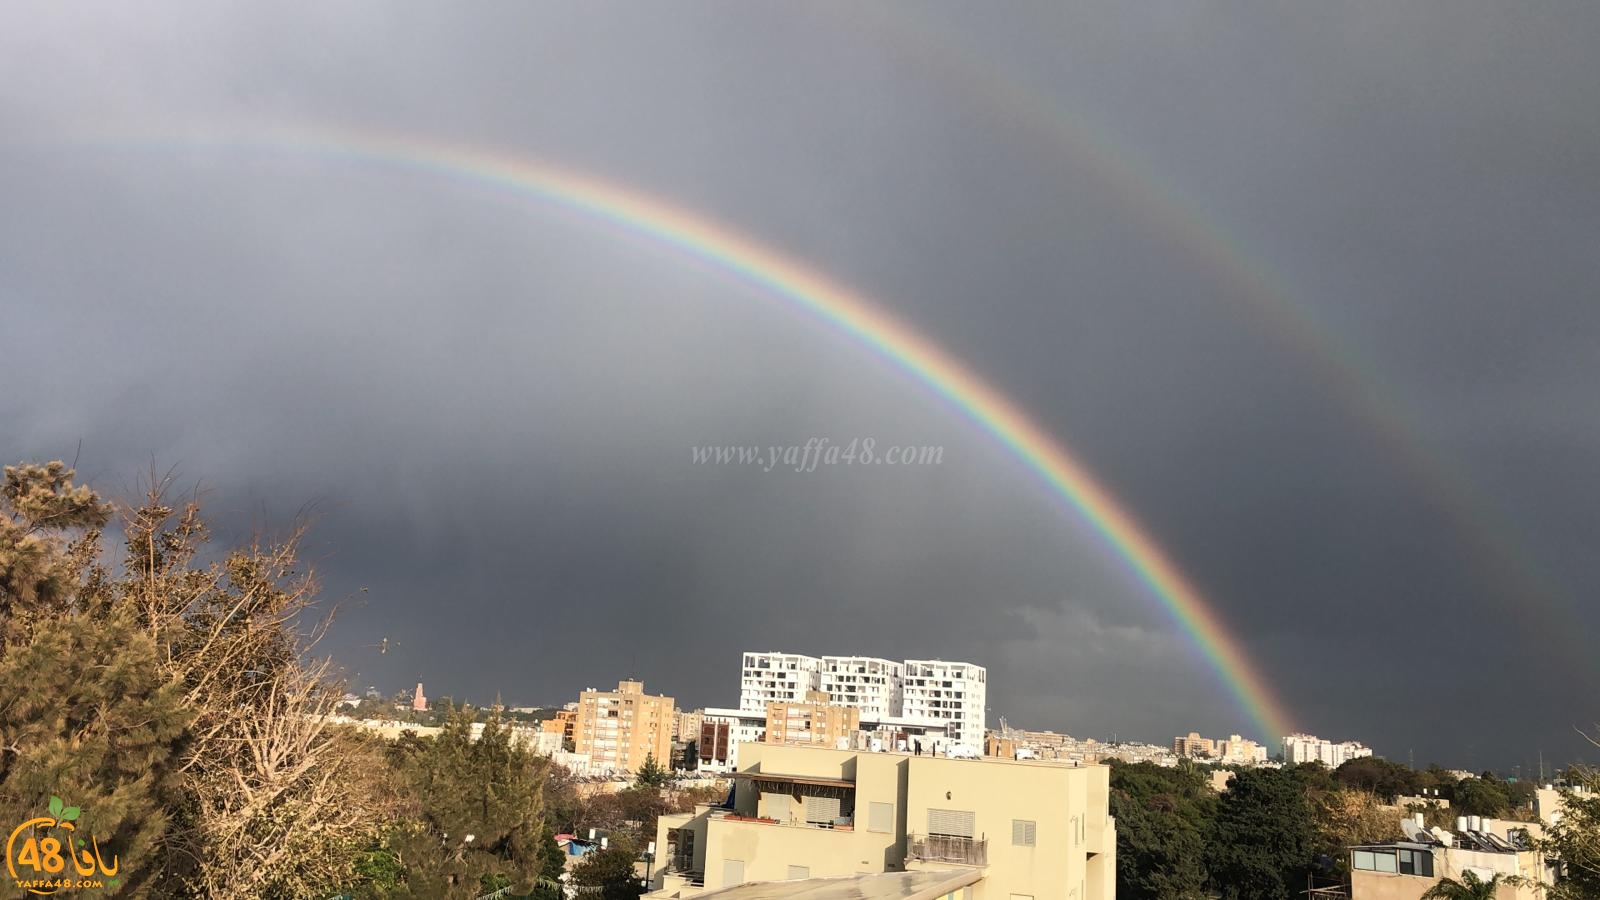  فيديو: أجواء ماطرة في يافا وقوس قزح يُزيّن سماء المدينة